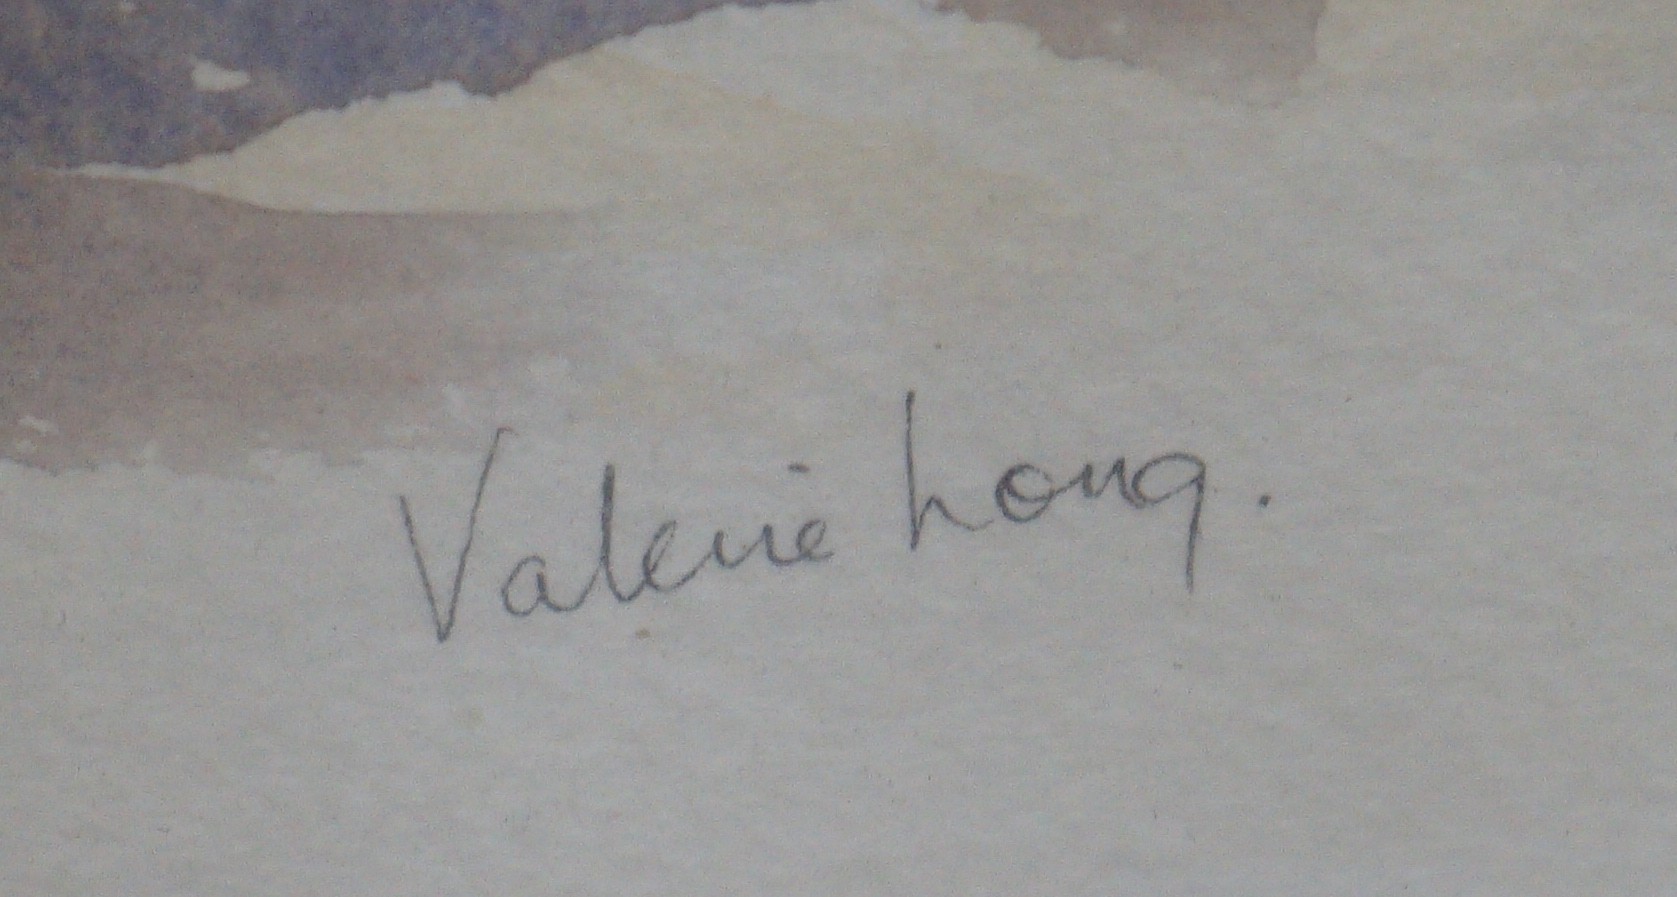 Valerie Long, watercolour, 'Chilham Market, Kent', signed, 30 x 60cm